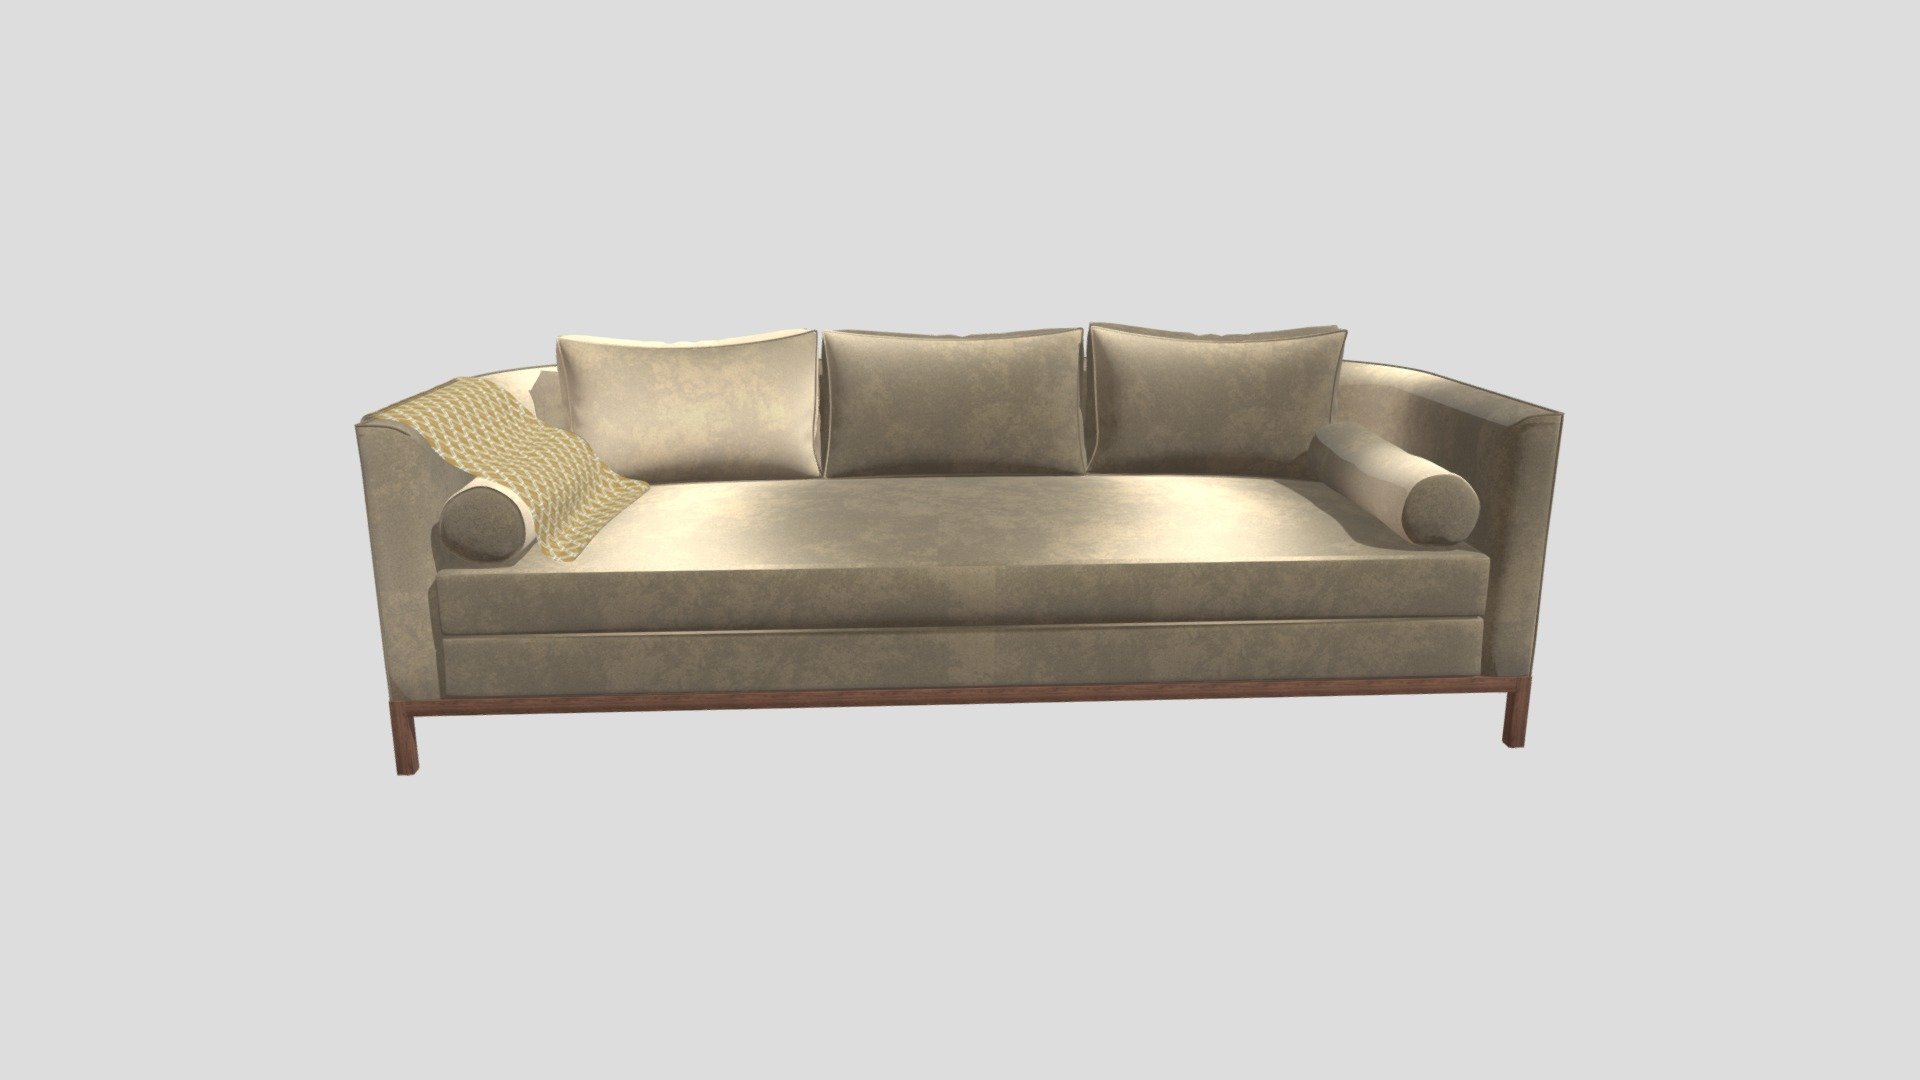 Sofa name: Curved Back Sofa

Seller: Lawson-Fenning

Dimensions: 231.36 x 93.98 x 78.74 cm | 17.5 x 37 x 31